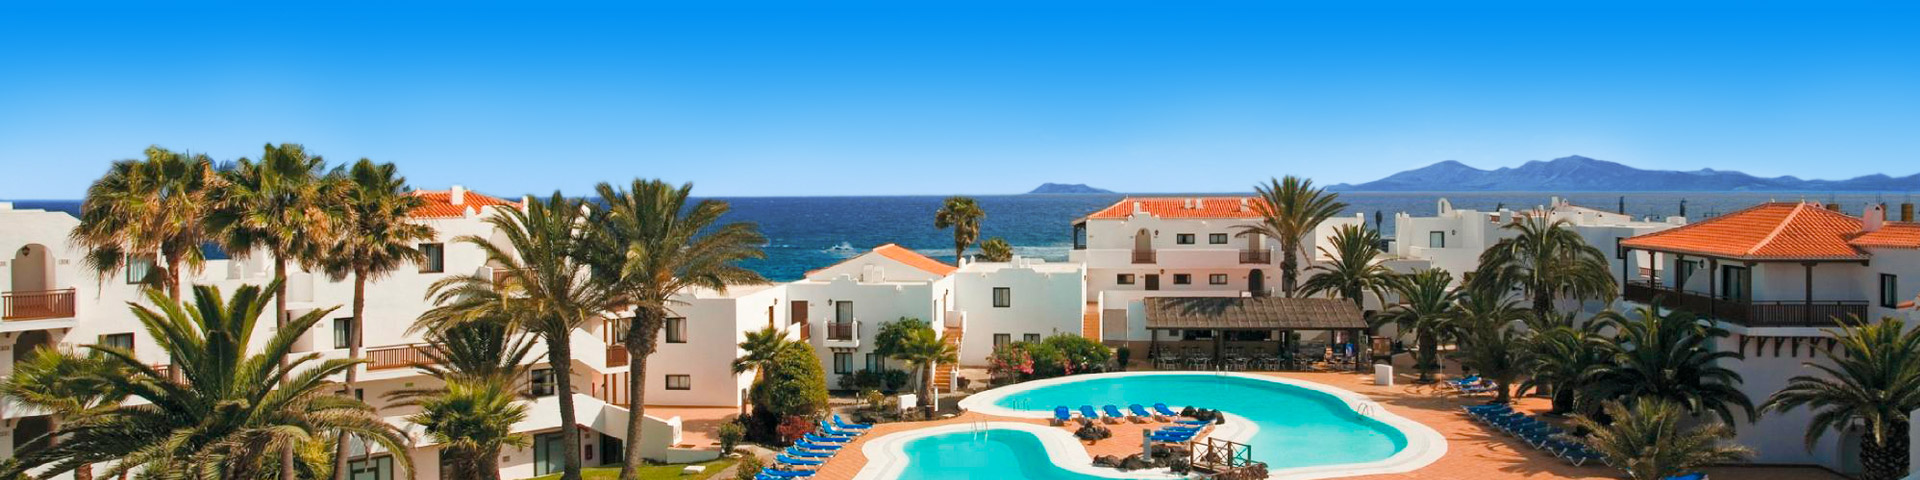 Hotel met witte kamers en oranje daken met 2 zwembaden en zee op de achtergrond